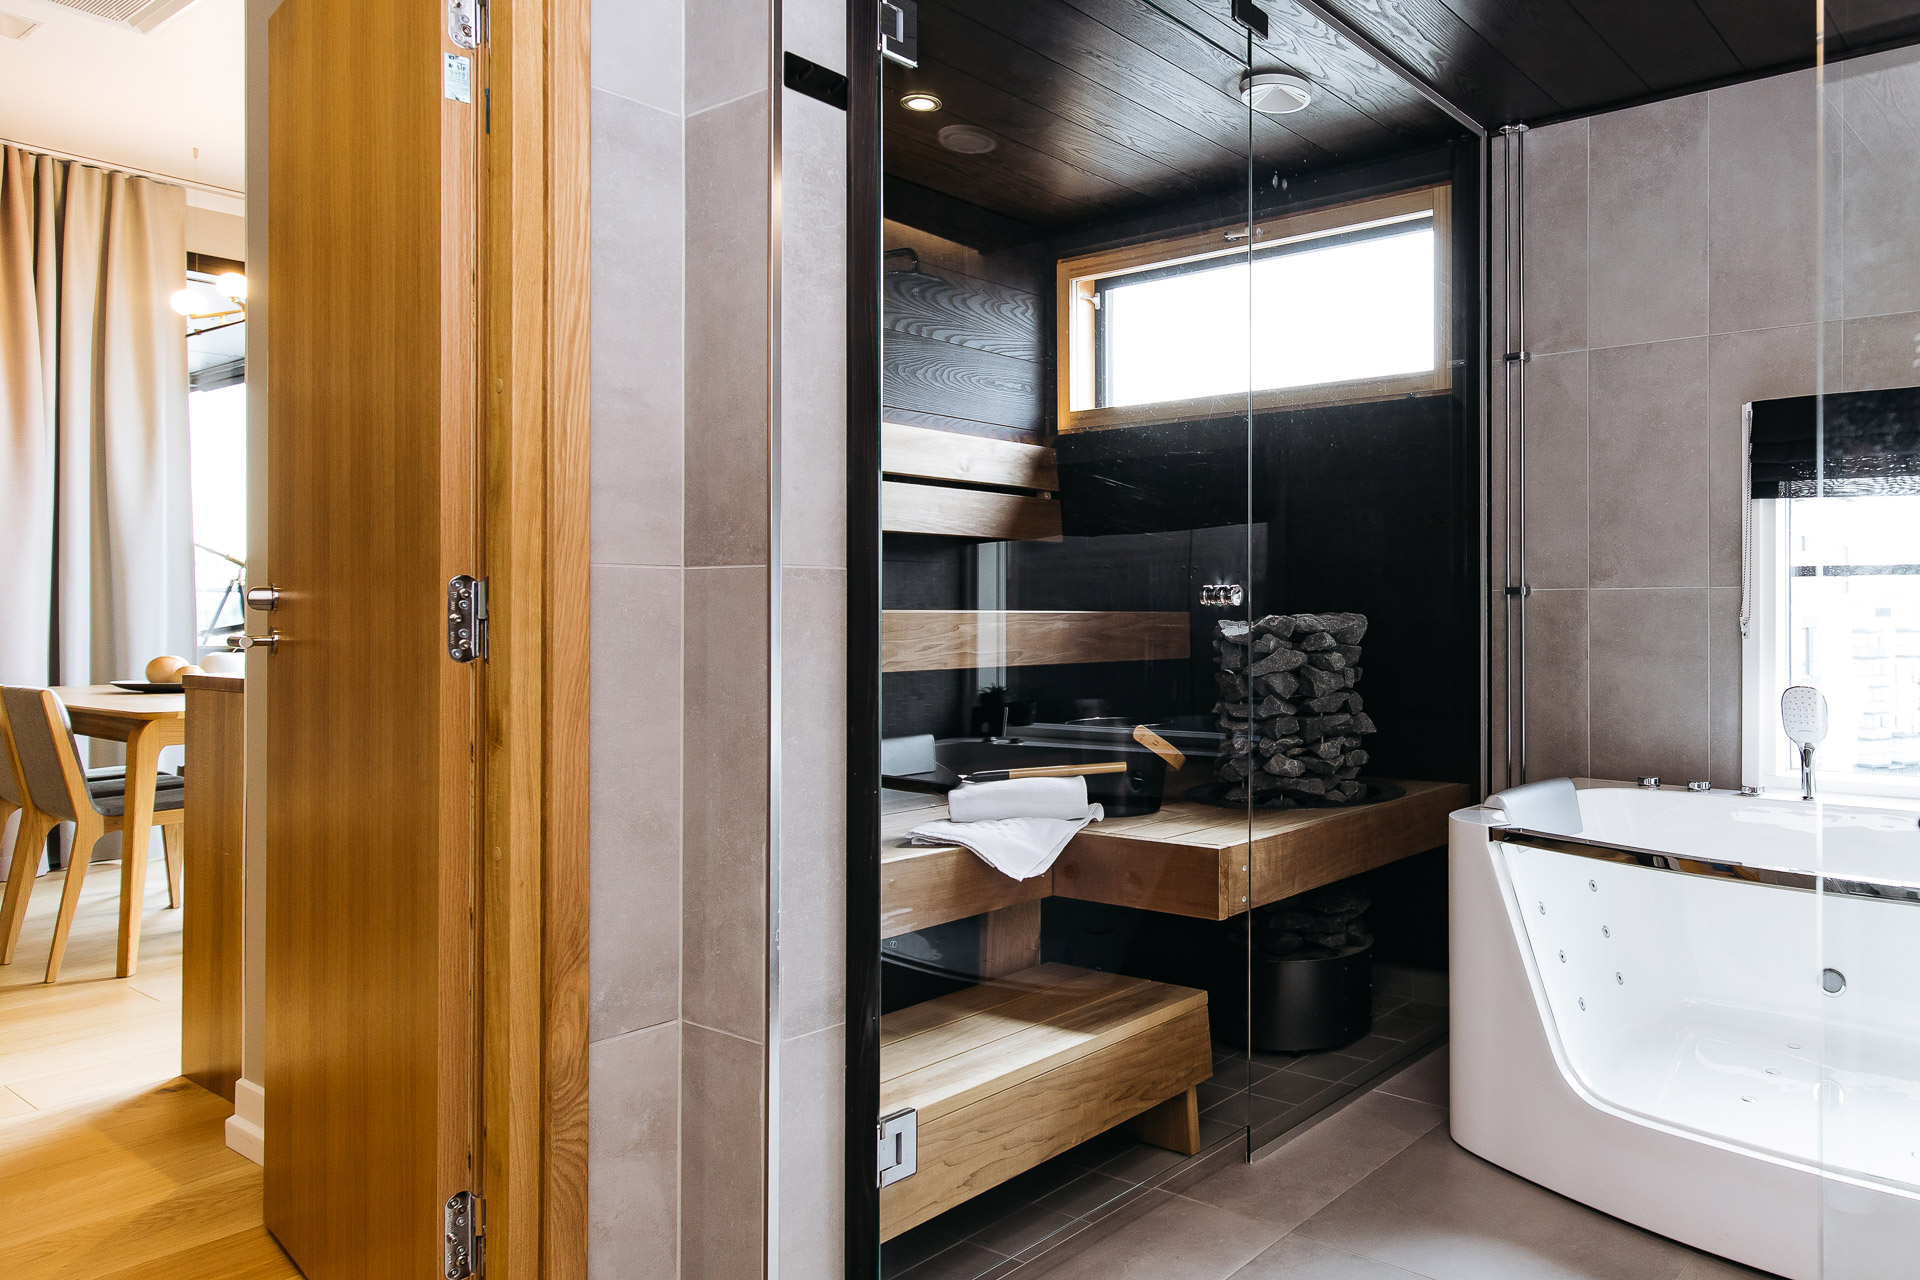 Hotelli Alma UKI Arkkitehdit kuva huonetilan kylpyhuoneesta ja saunasta